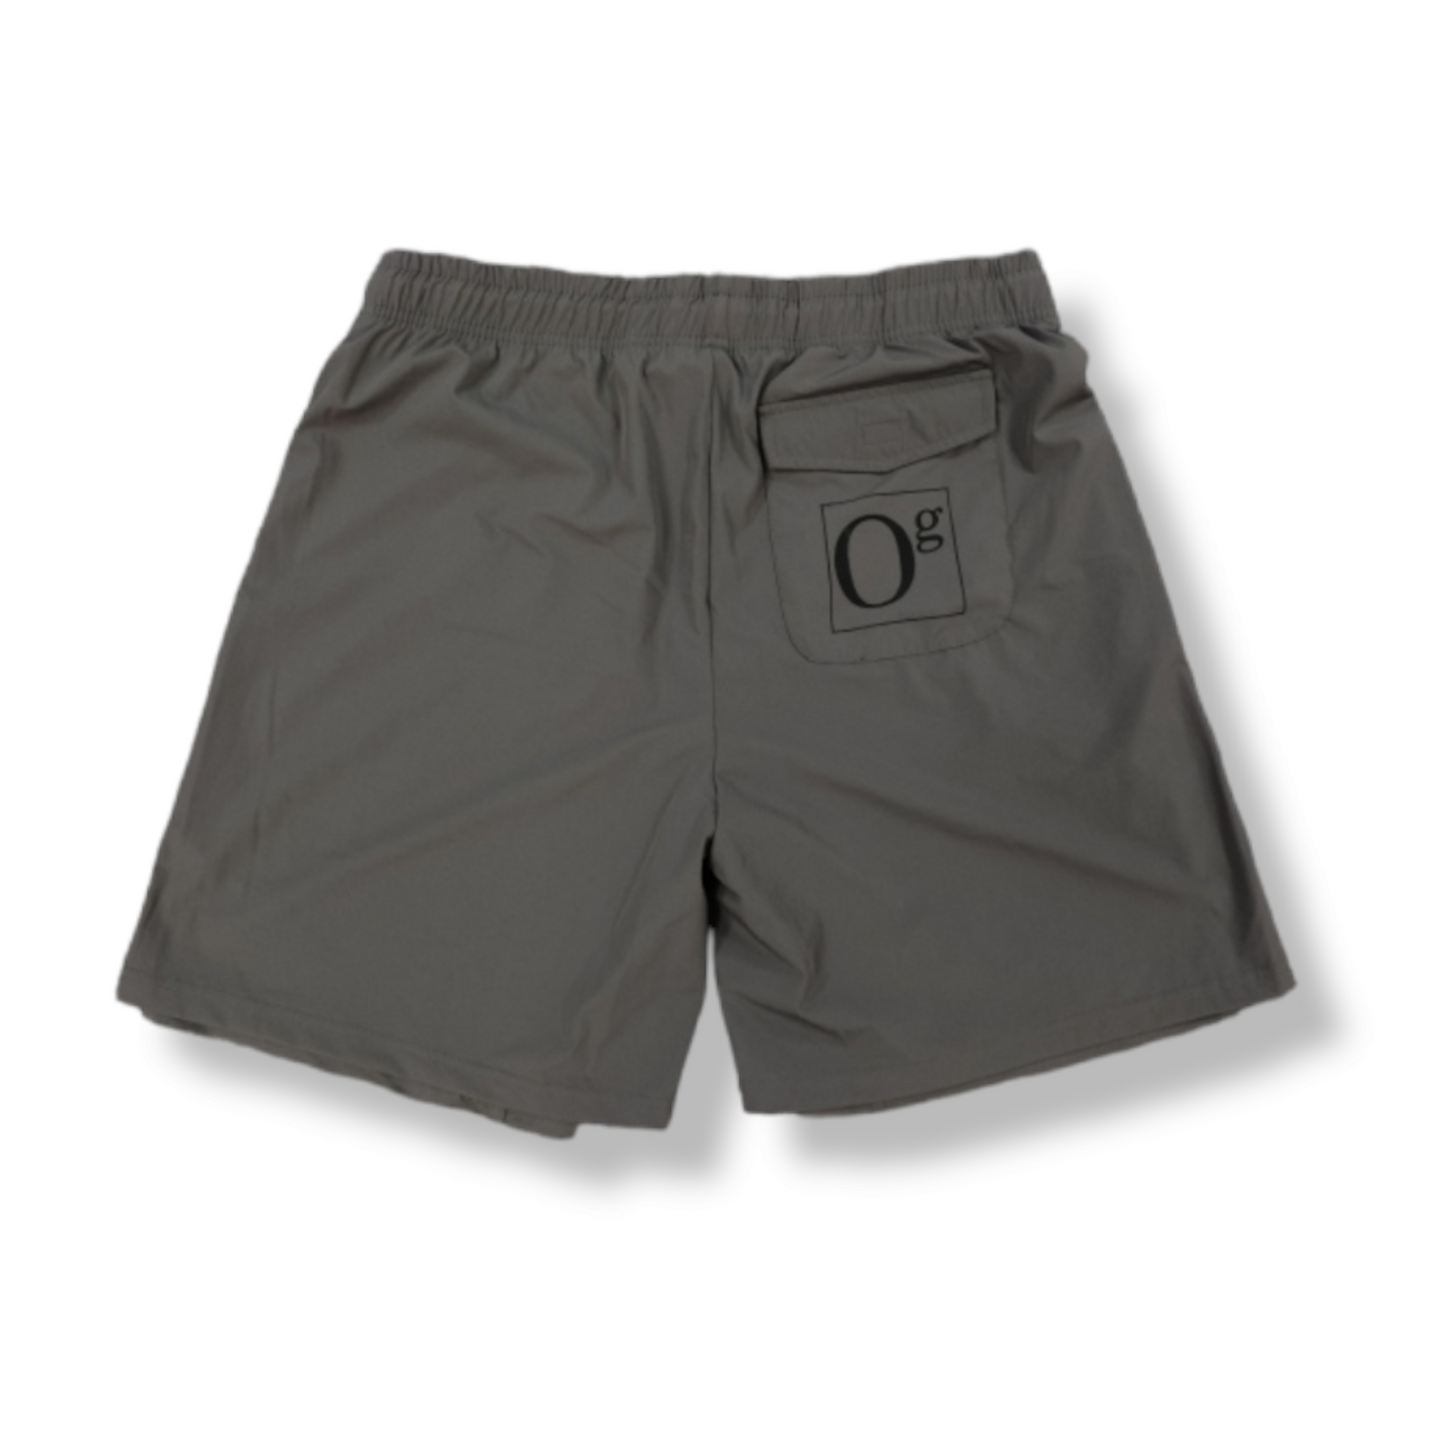 oG Flower Pin Shorts Grey (PRE-ORDER)